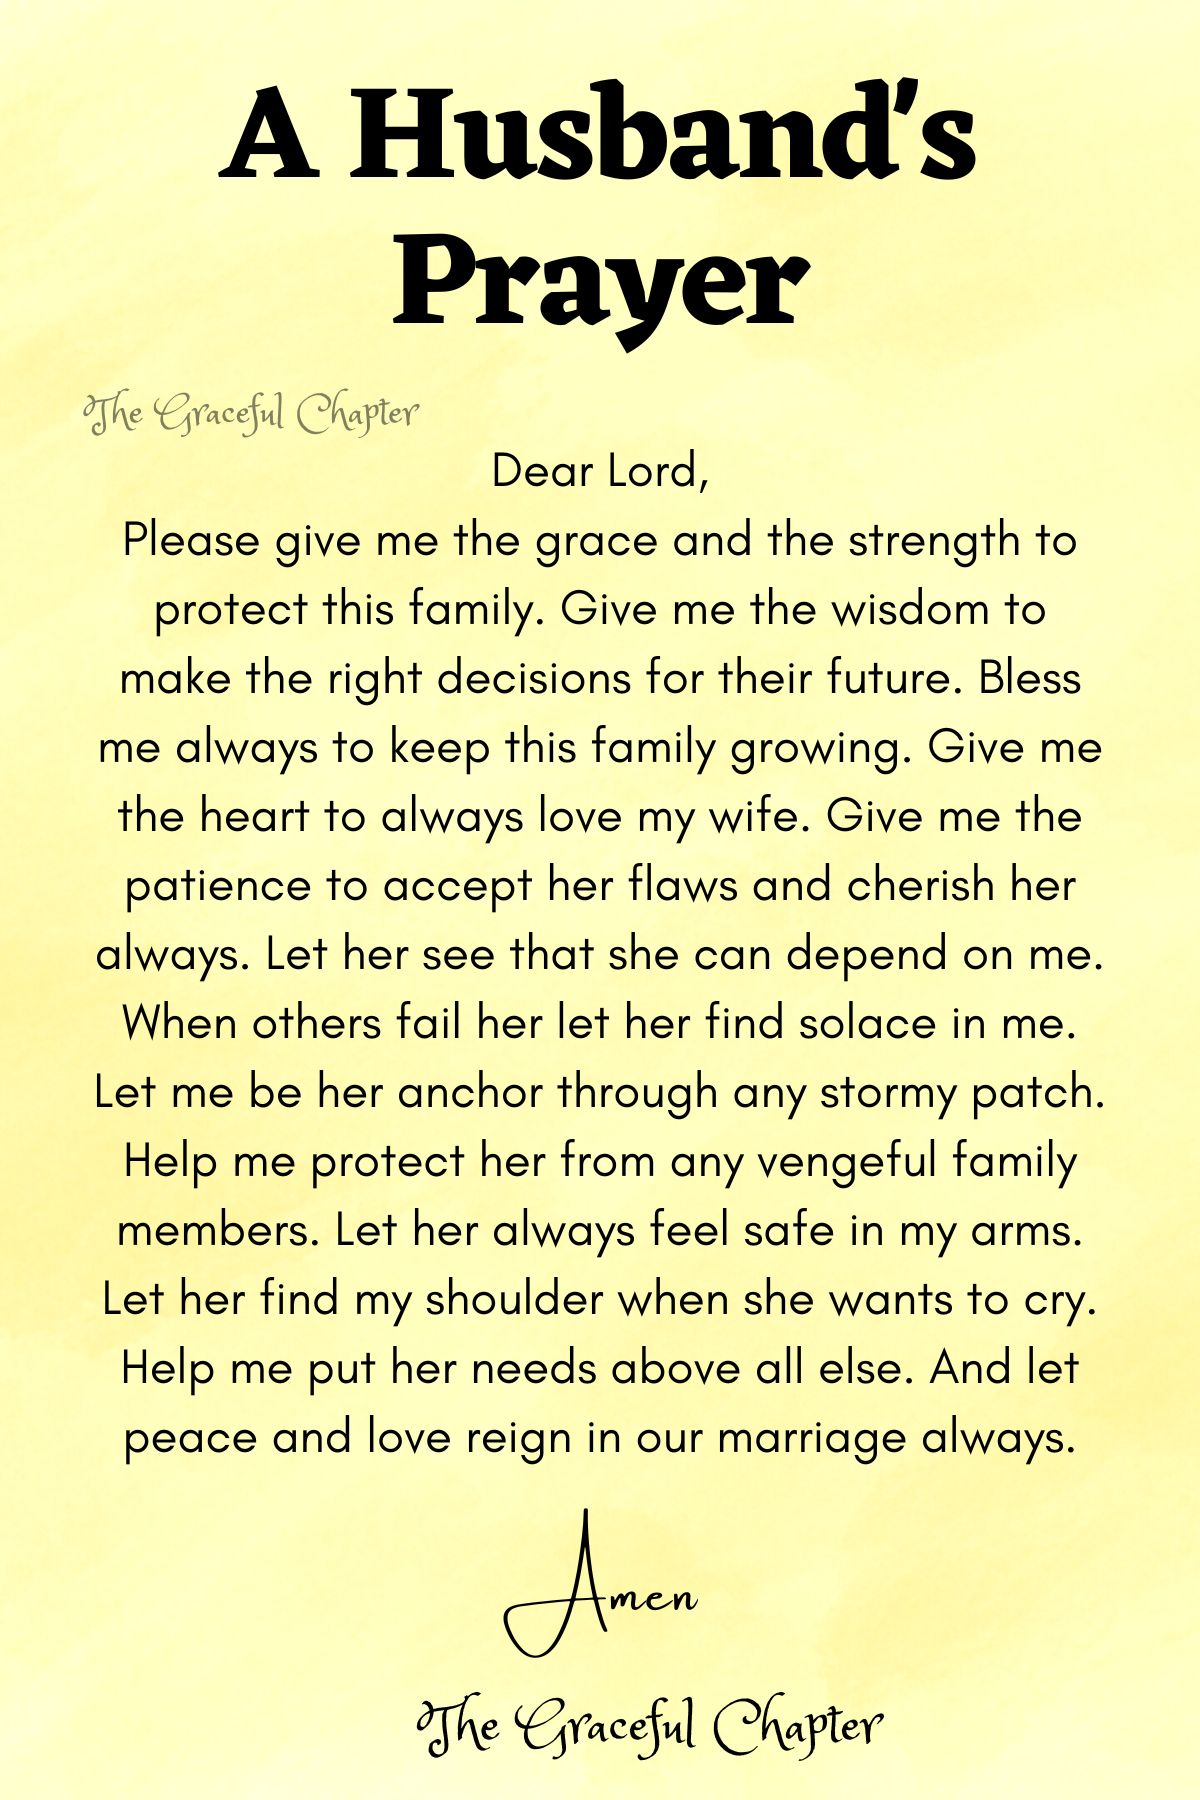 A husband's prayer